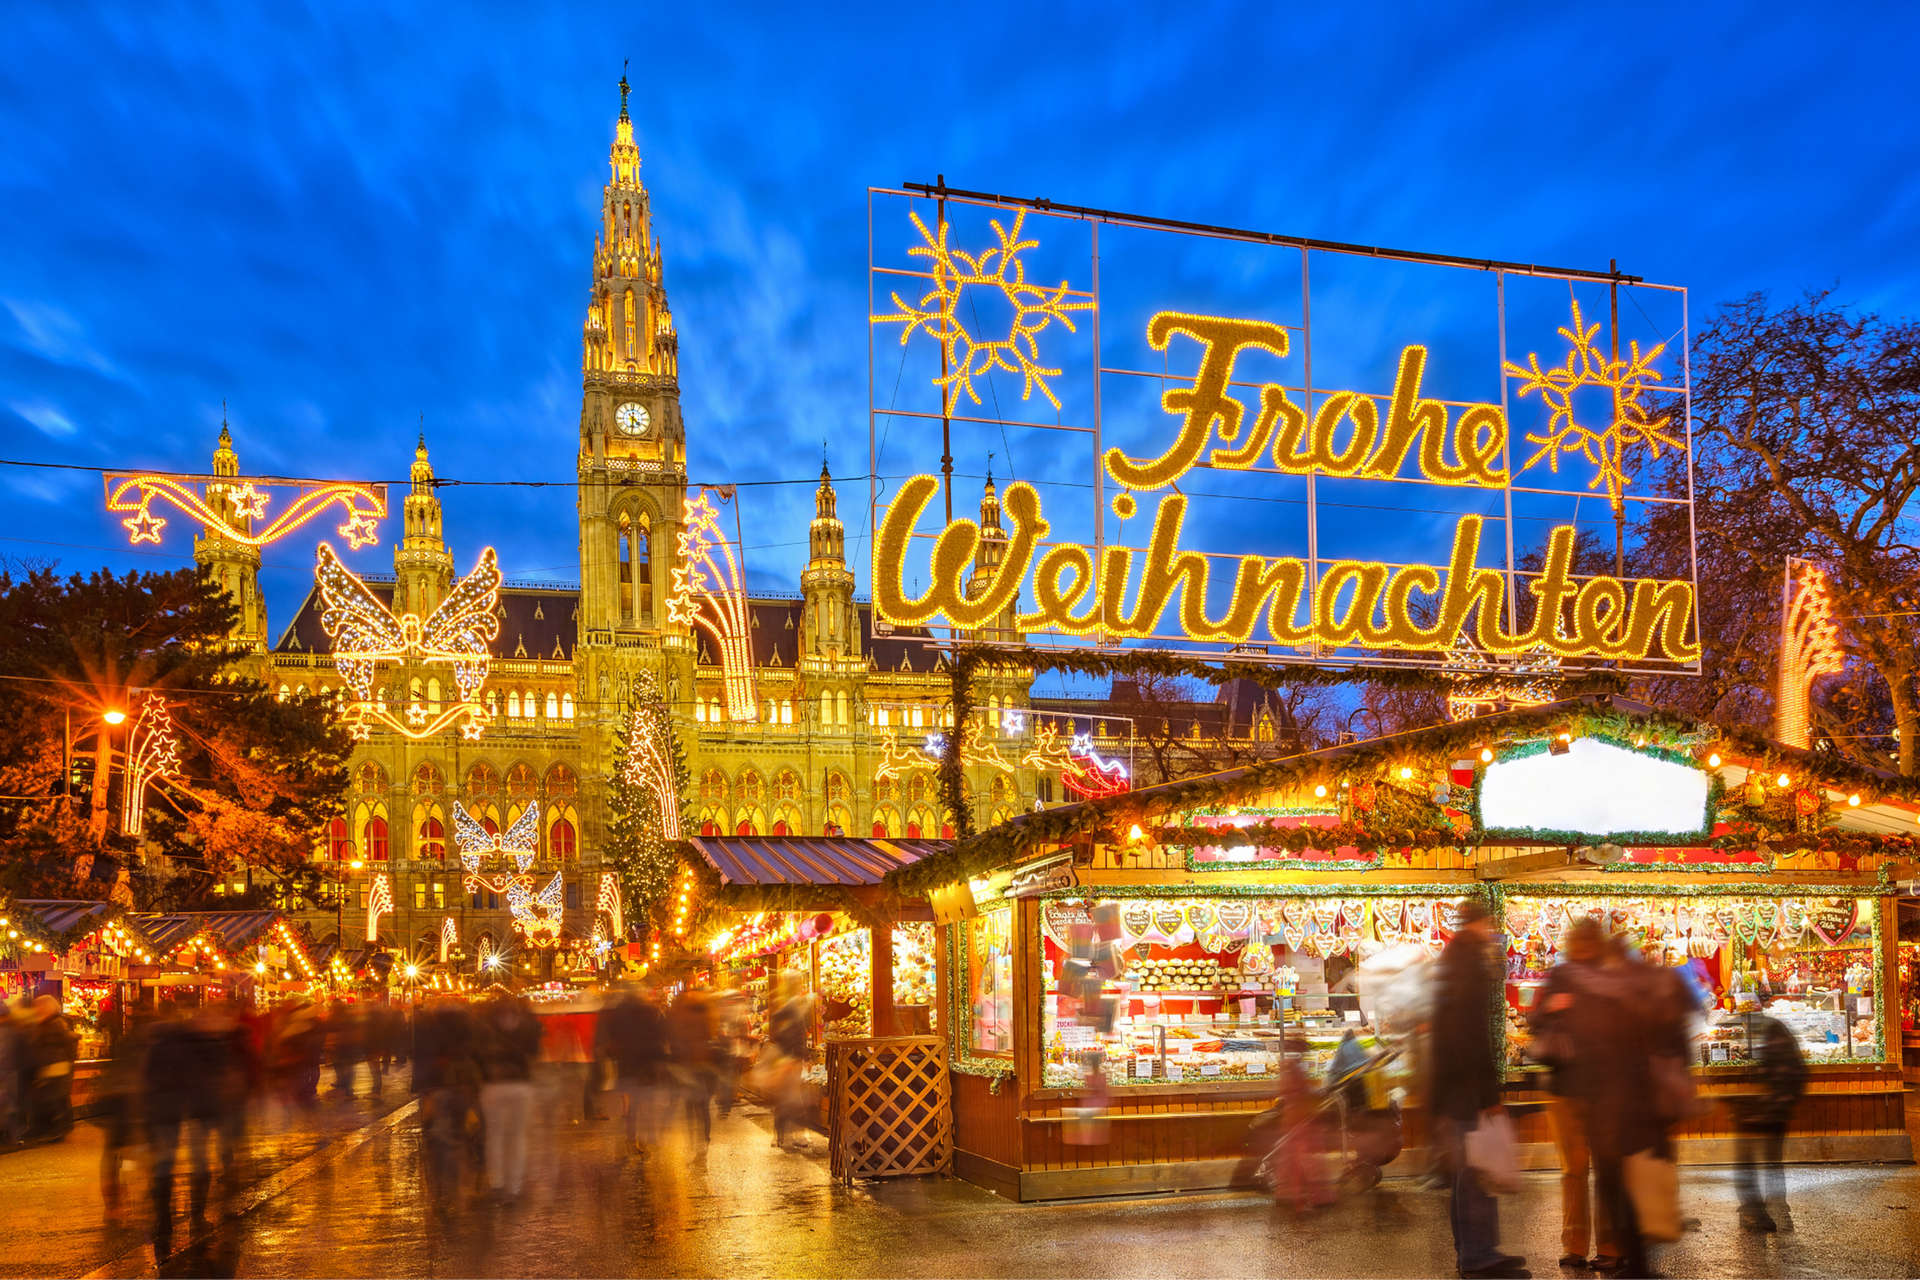 La stagione dei mercatini di Natale è un momento davvero magico da vivere nella capitale austriaca